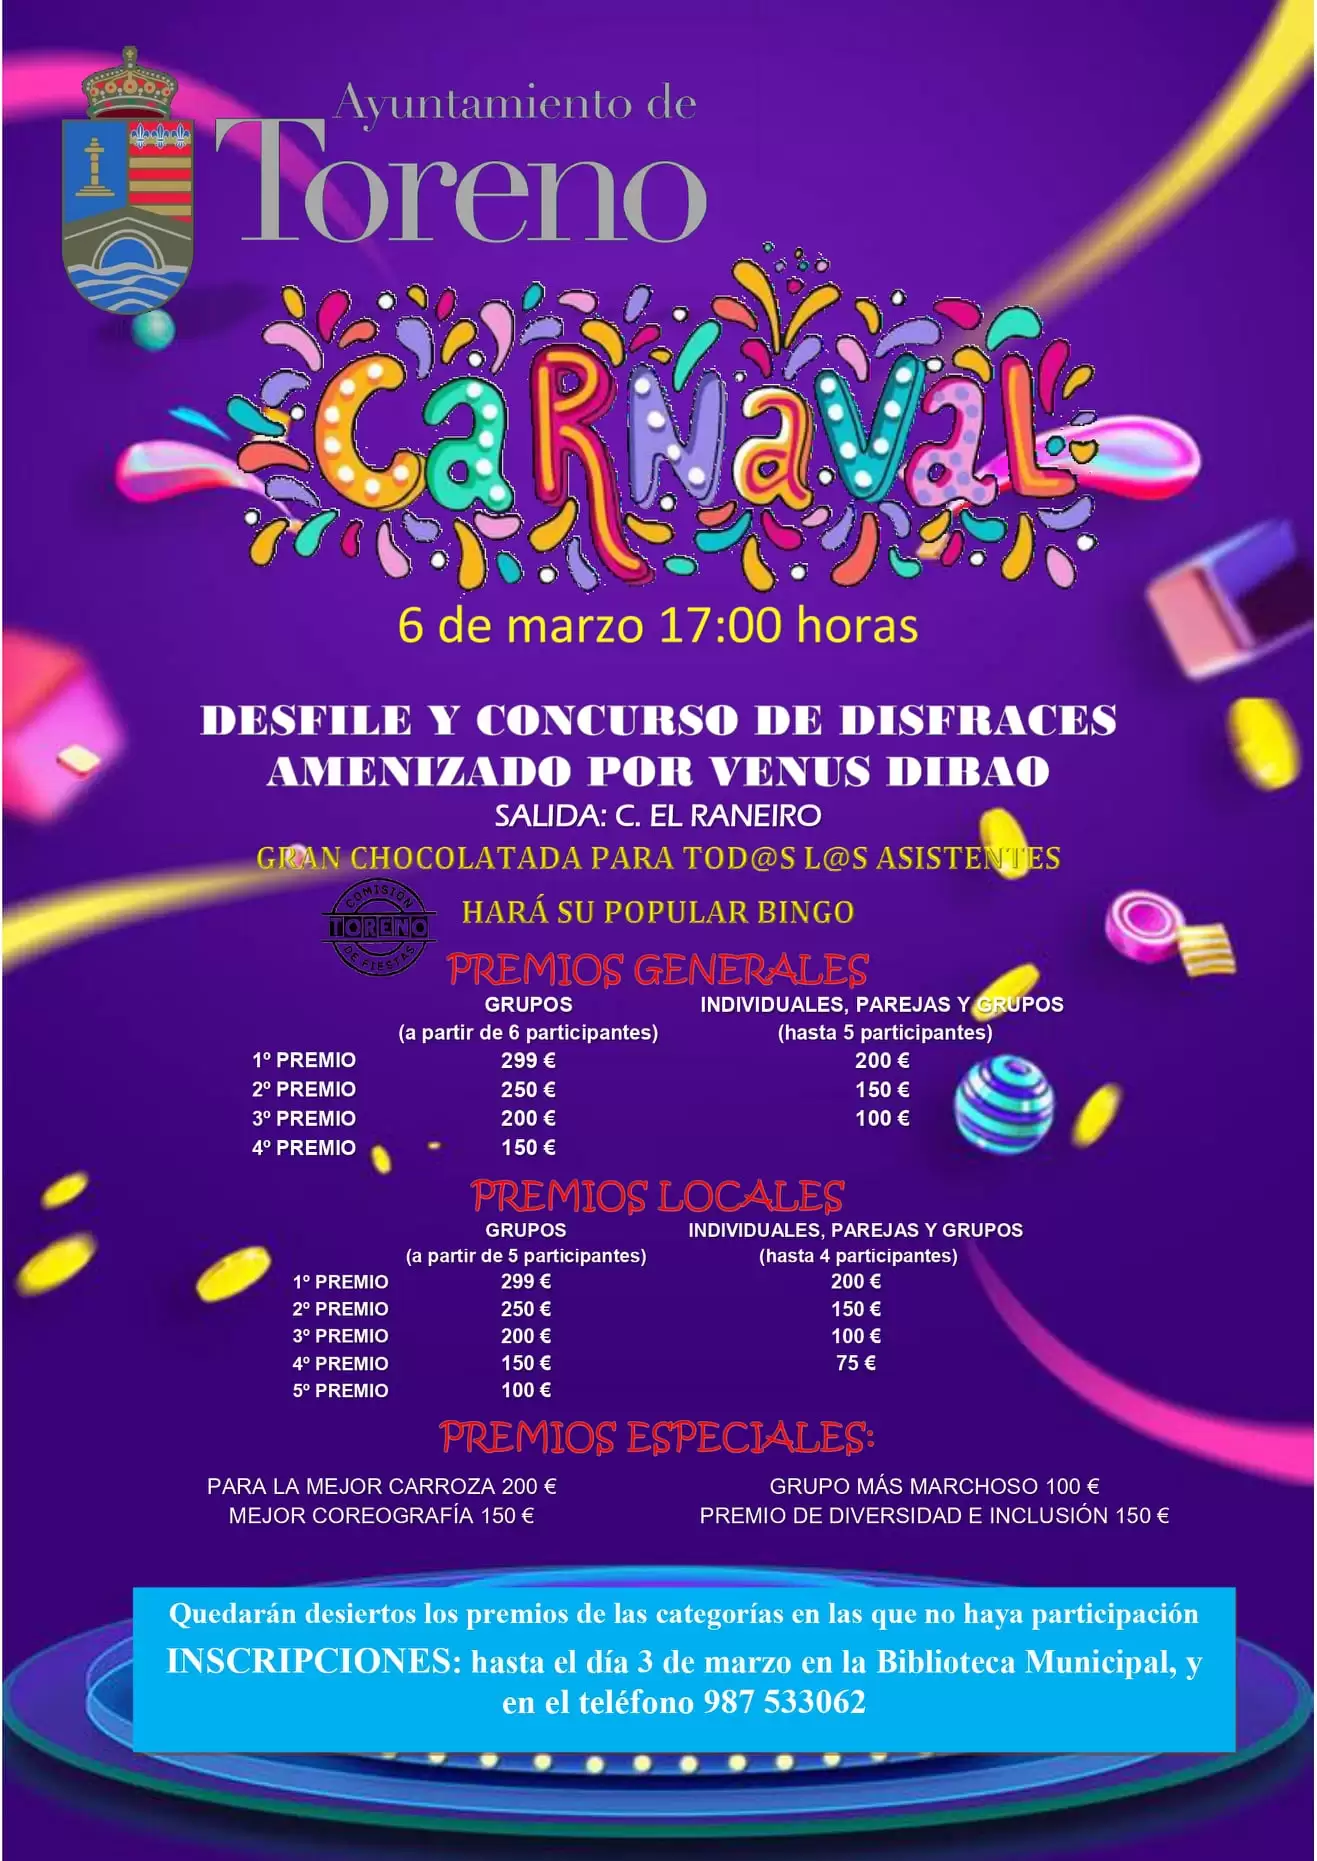 Carnaval en el Bierzo. Todas las fechas y horarios para que no te pierdas nada 25